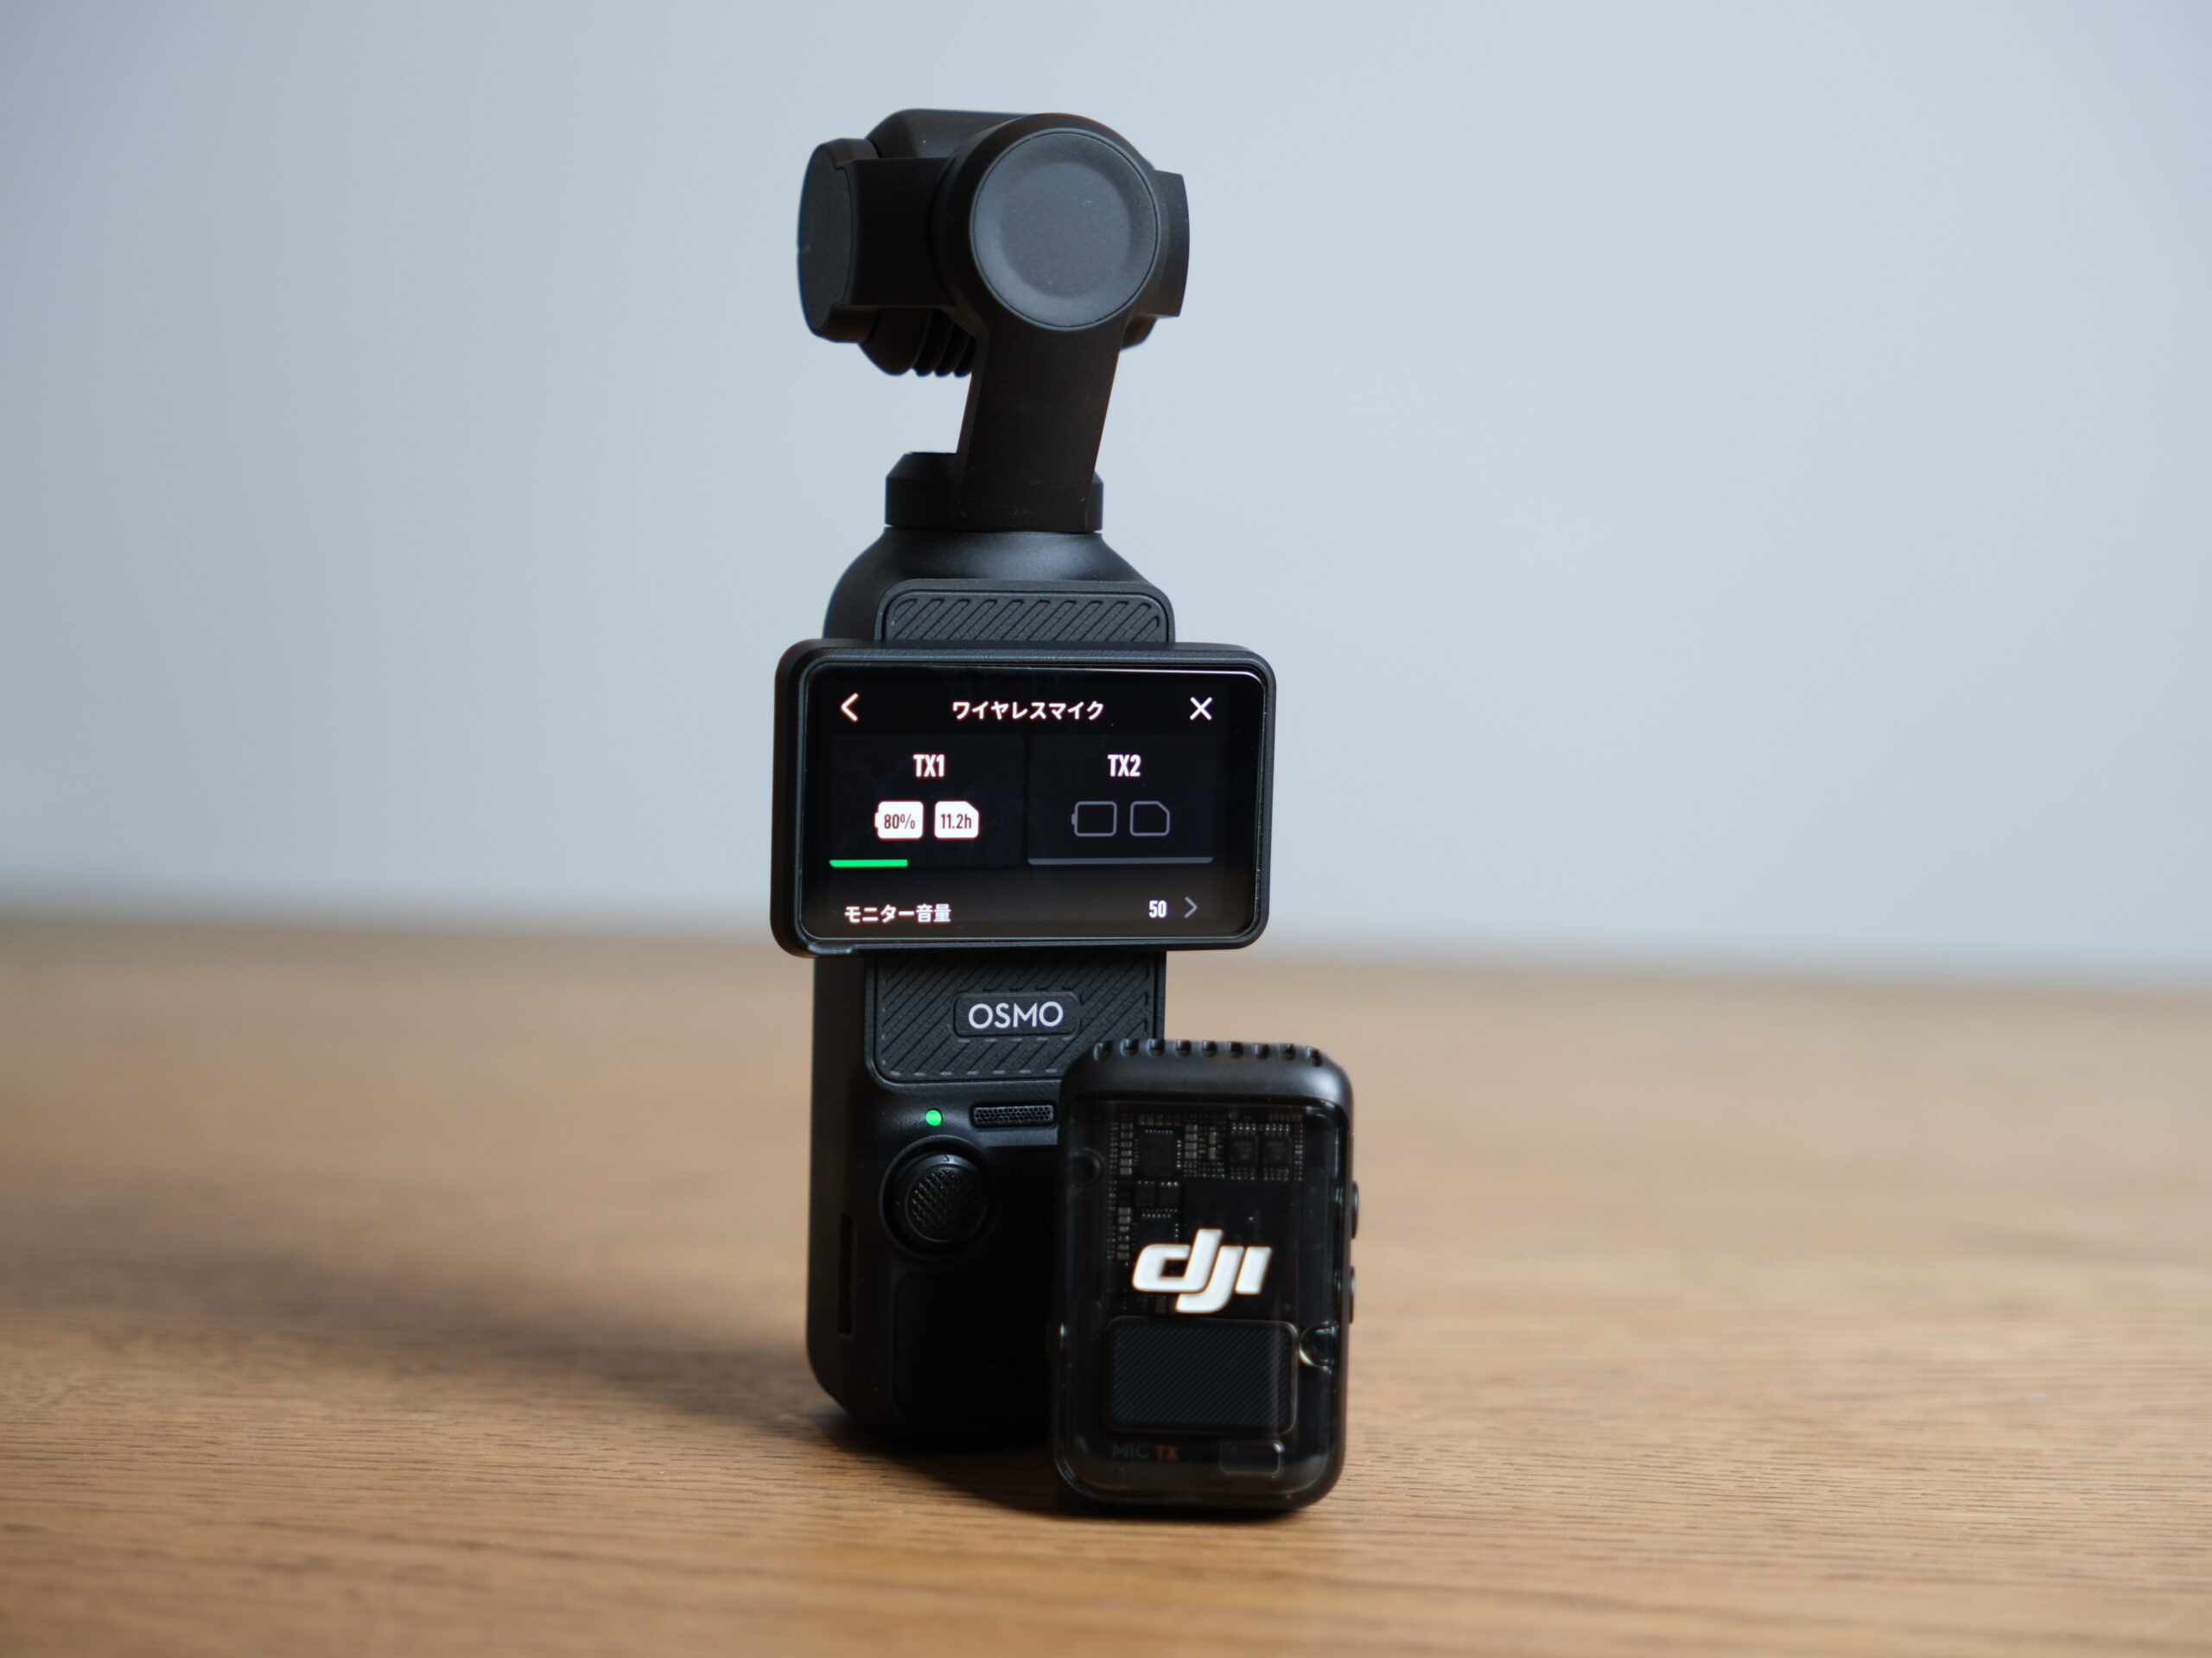 DJI OSMO Pocket (マイク不良) - ビデオカメラ